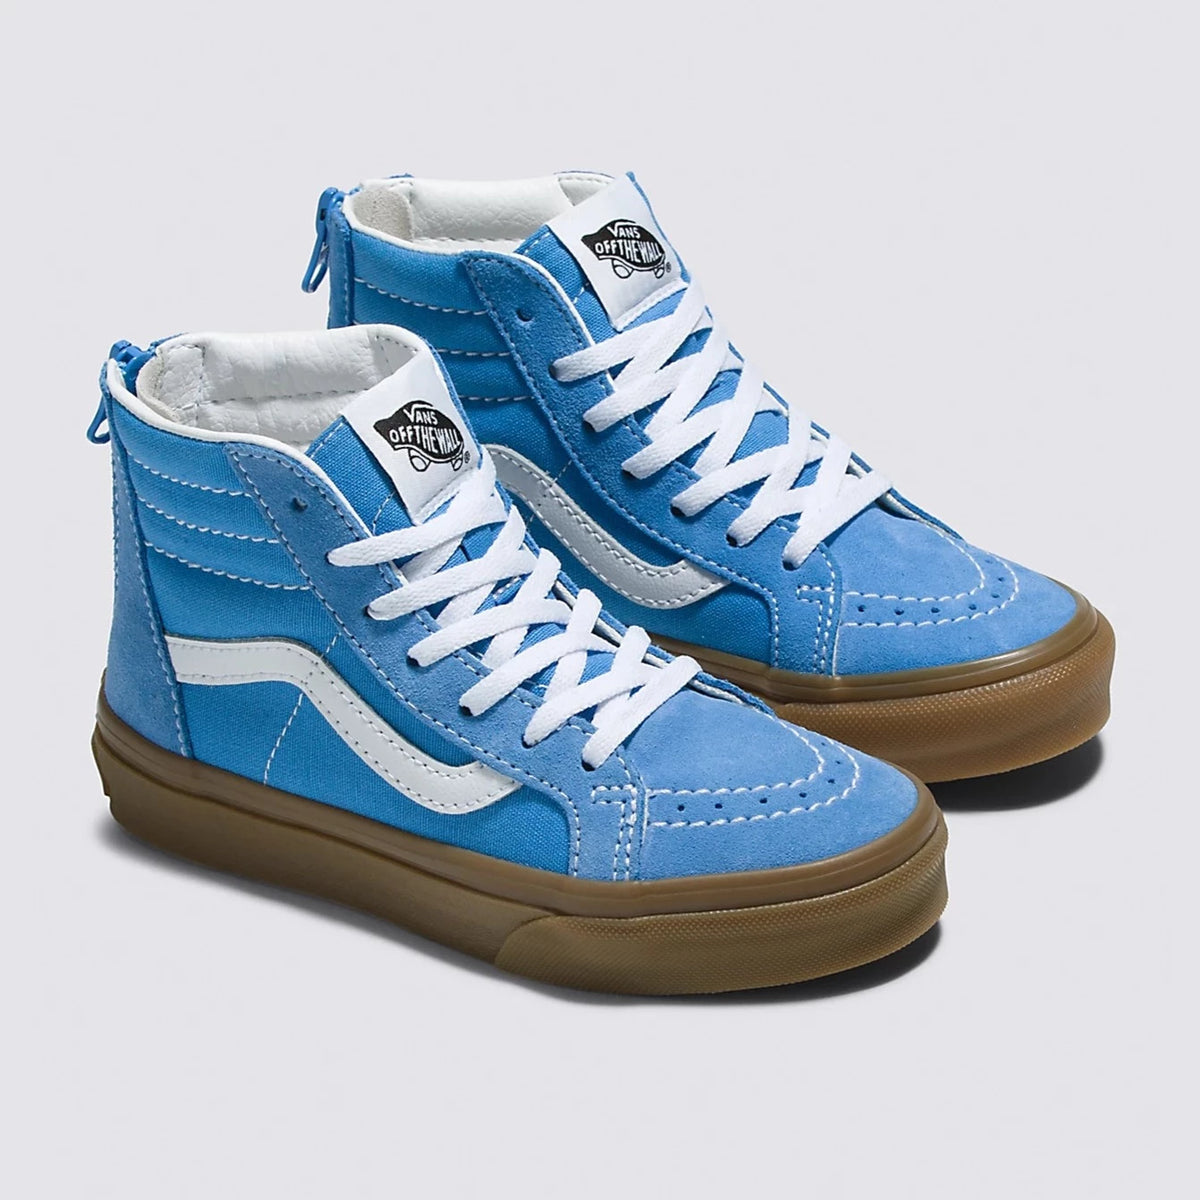 Vans Azure Blue Gum SK8-Hi Zip Shoe for Toddlers & Youth